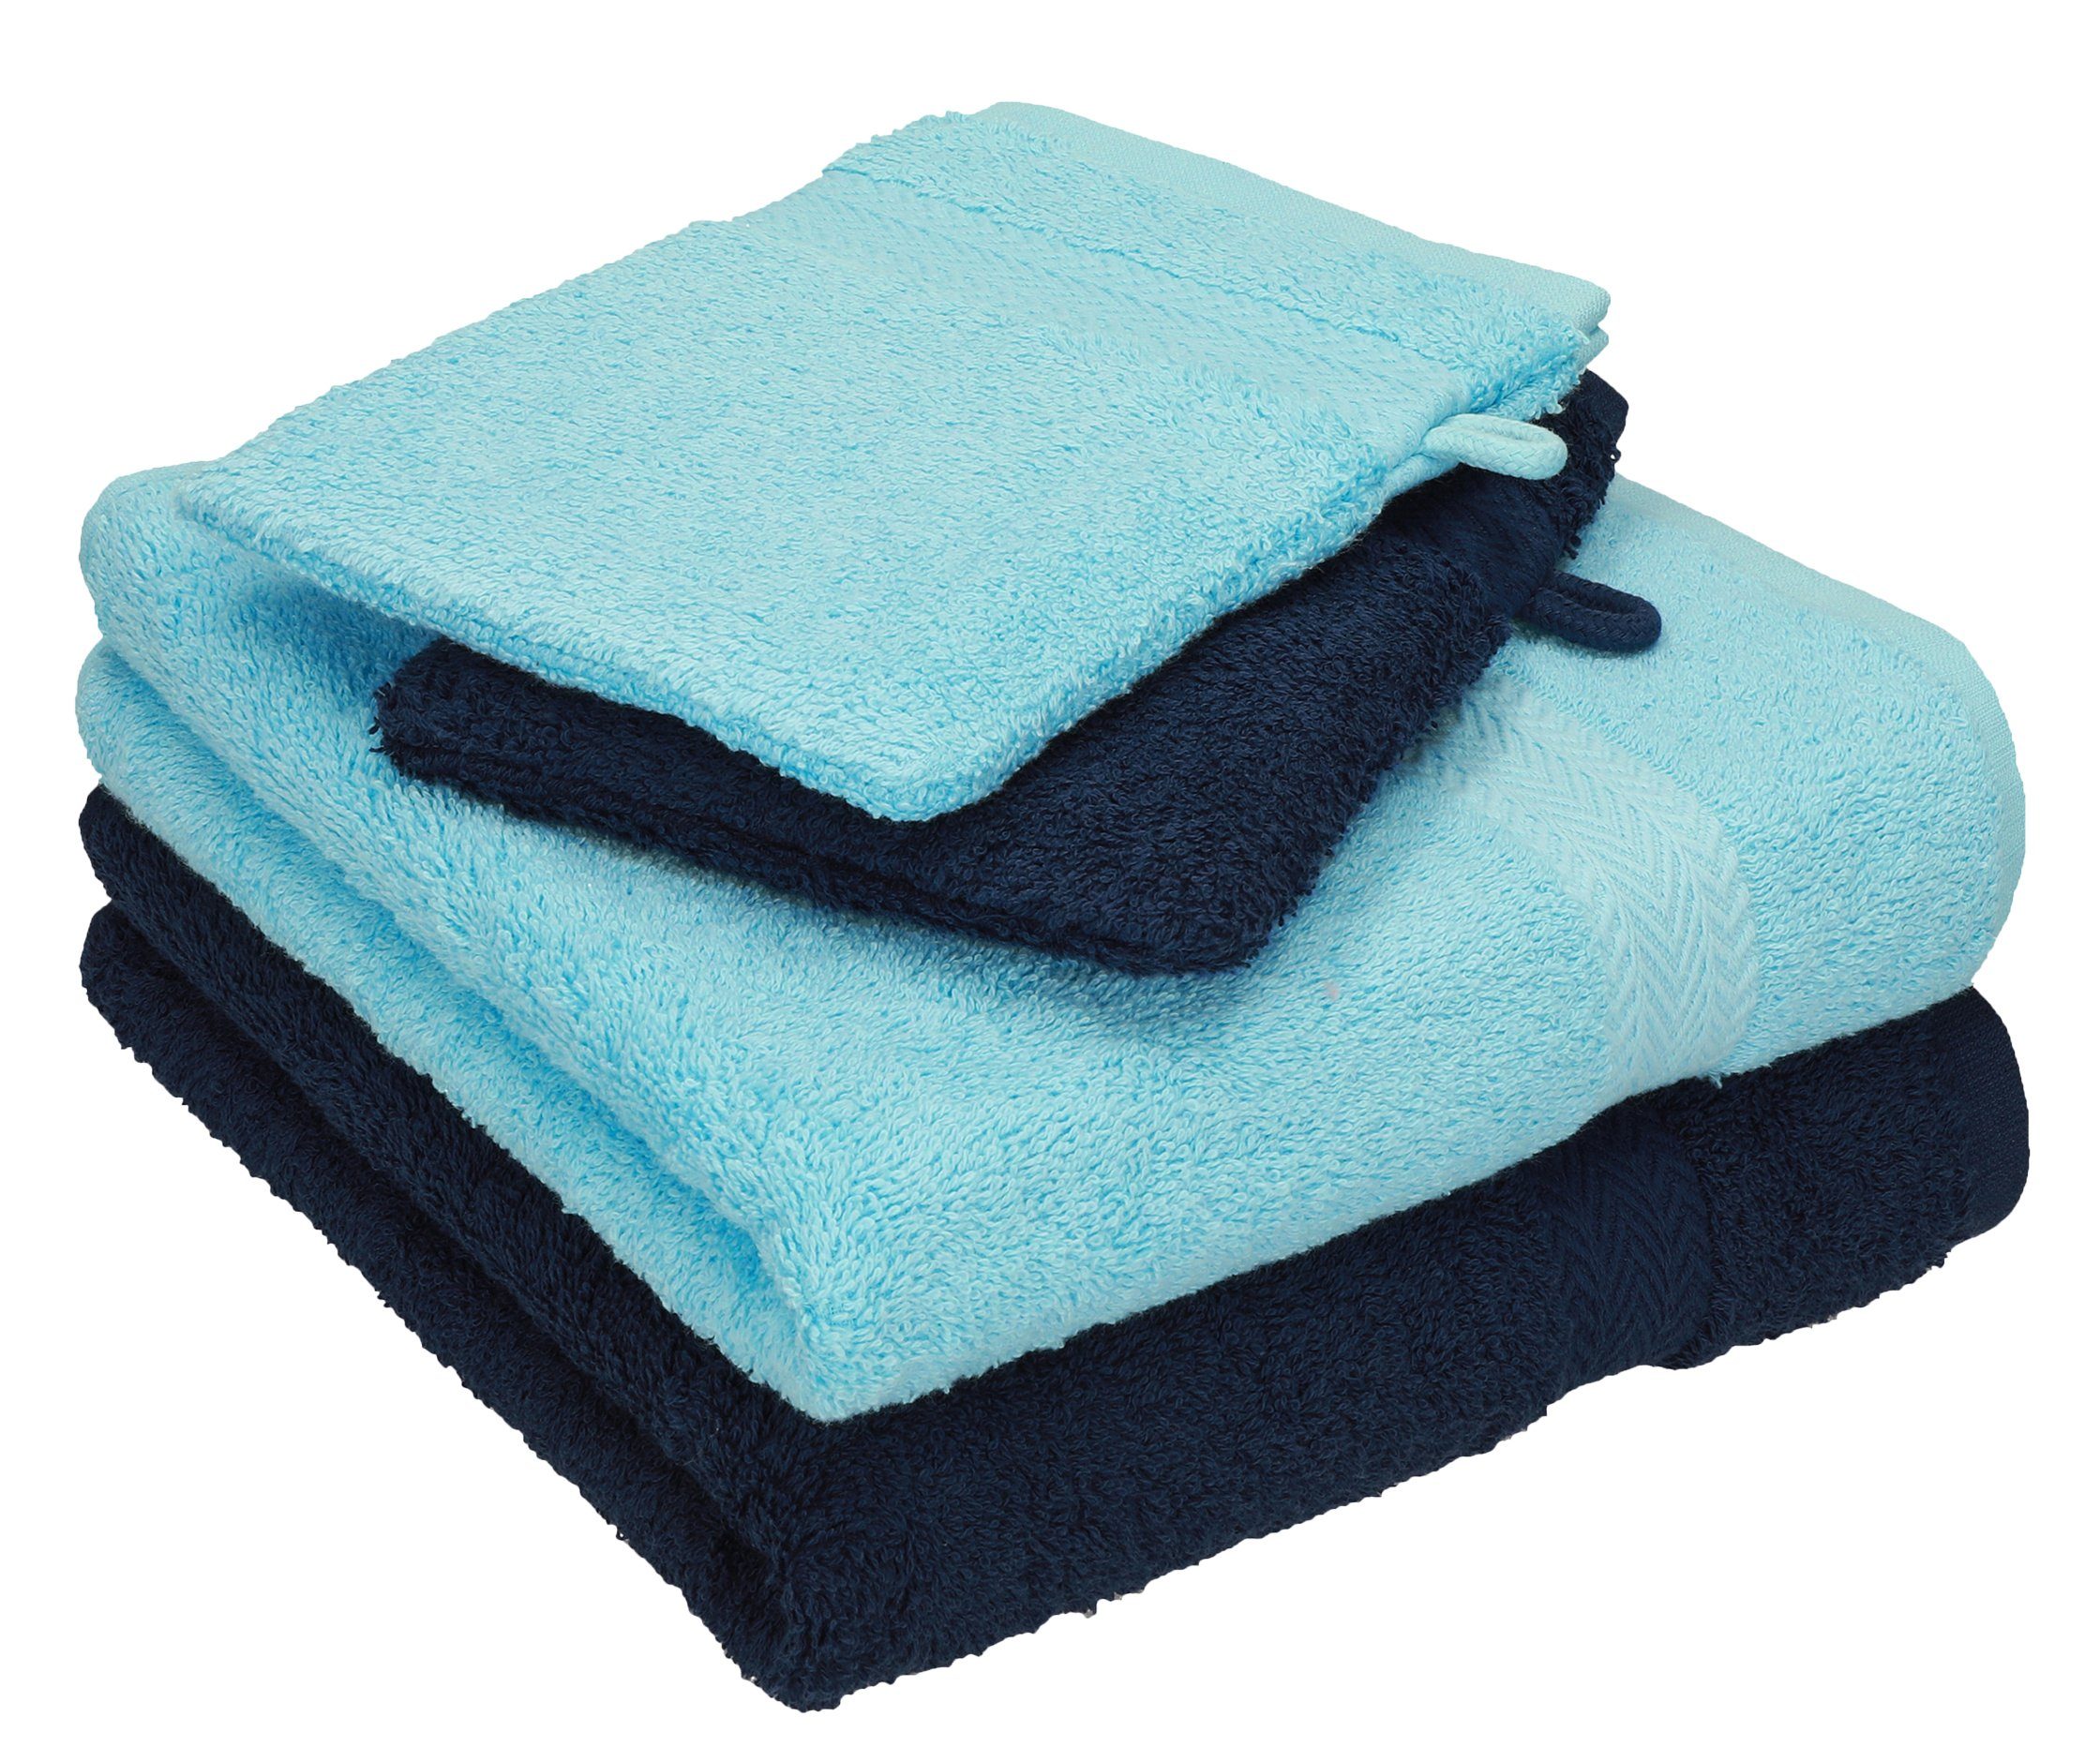 Betz Handtuch Set 4 TLG. Handtuch Set Happy Pack 100% Baumwolle 2 Handtücher 2 Waschhandschuhe, 100% Baumwolle, (4-tlg) türkis-dunkelblau | Handtuch-Sets